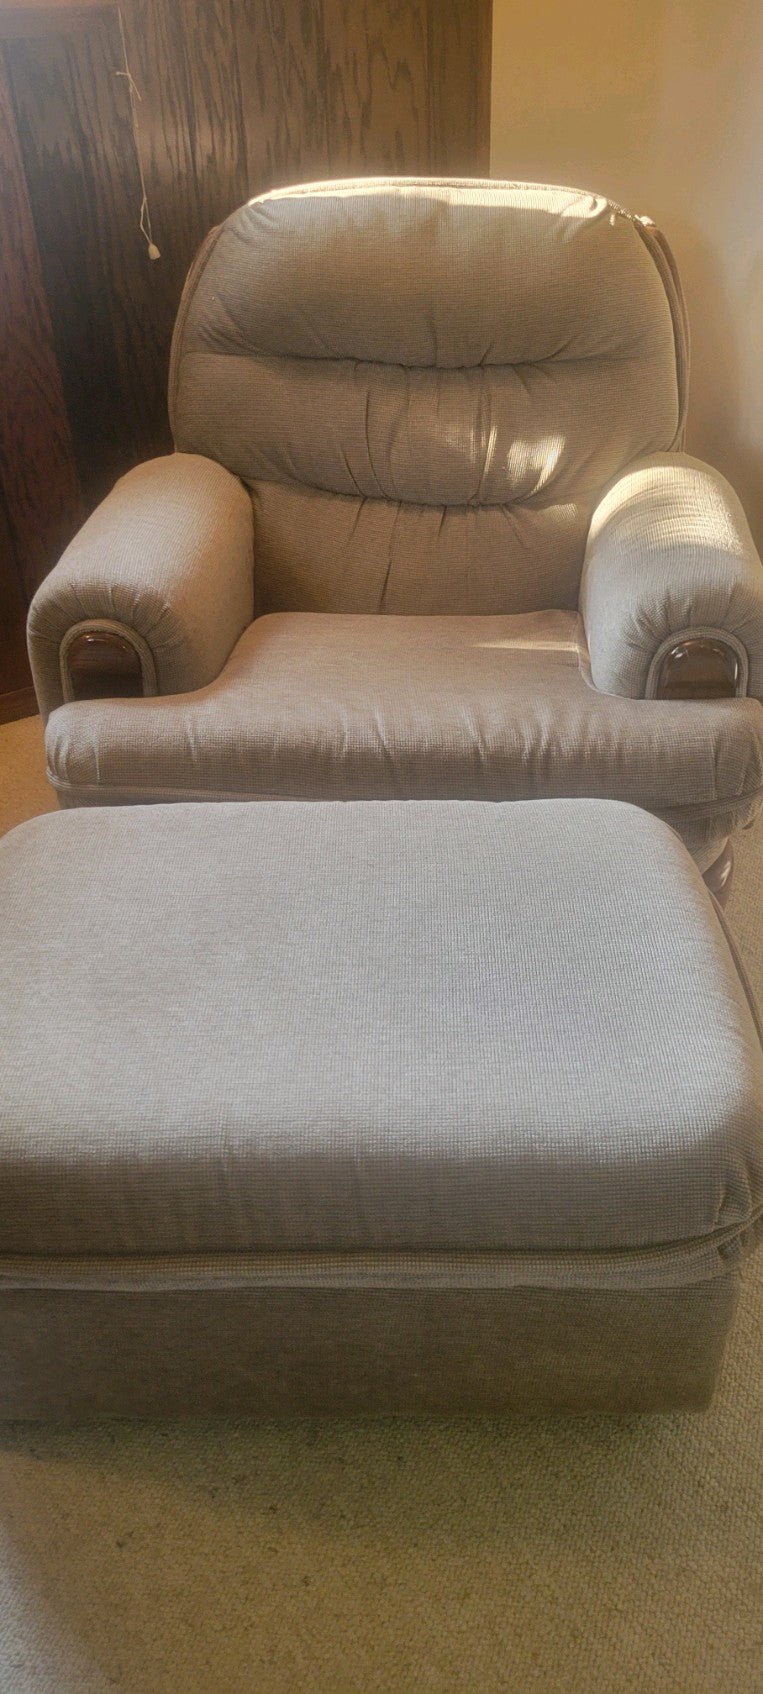 Chair w/Ottoman